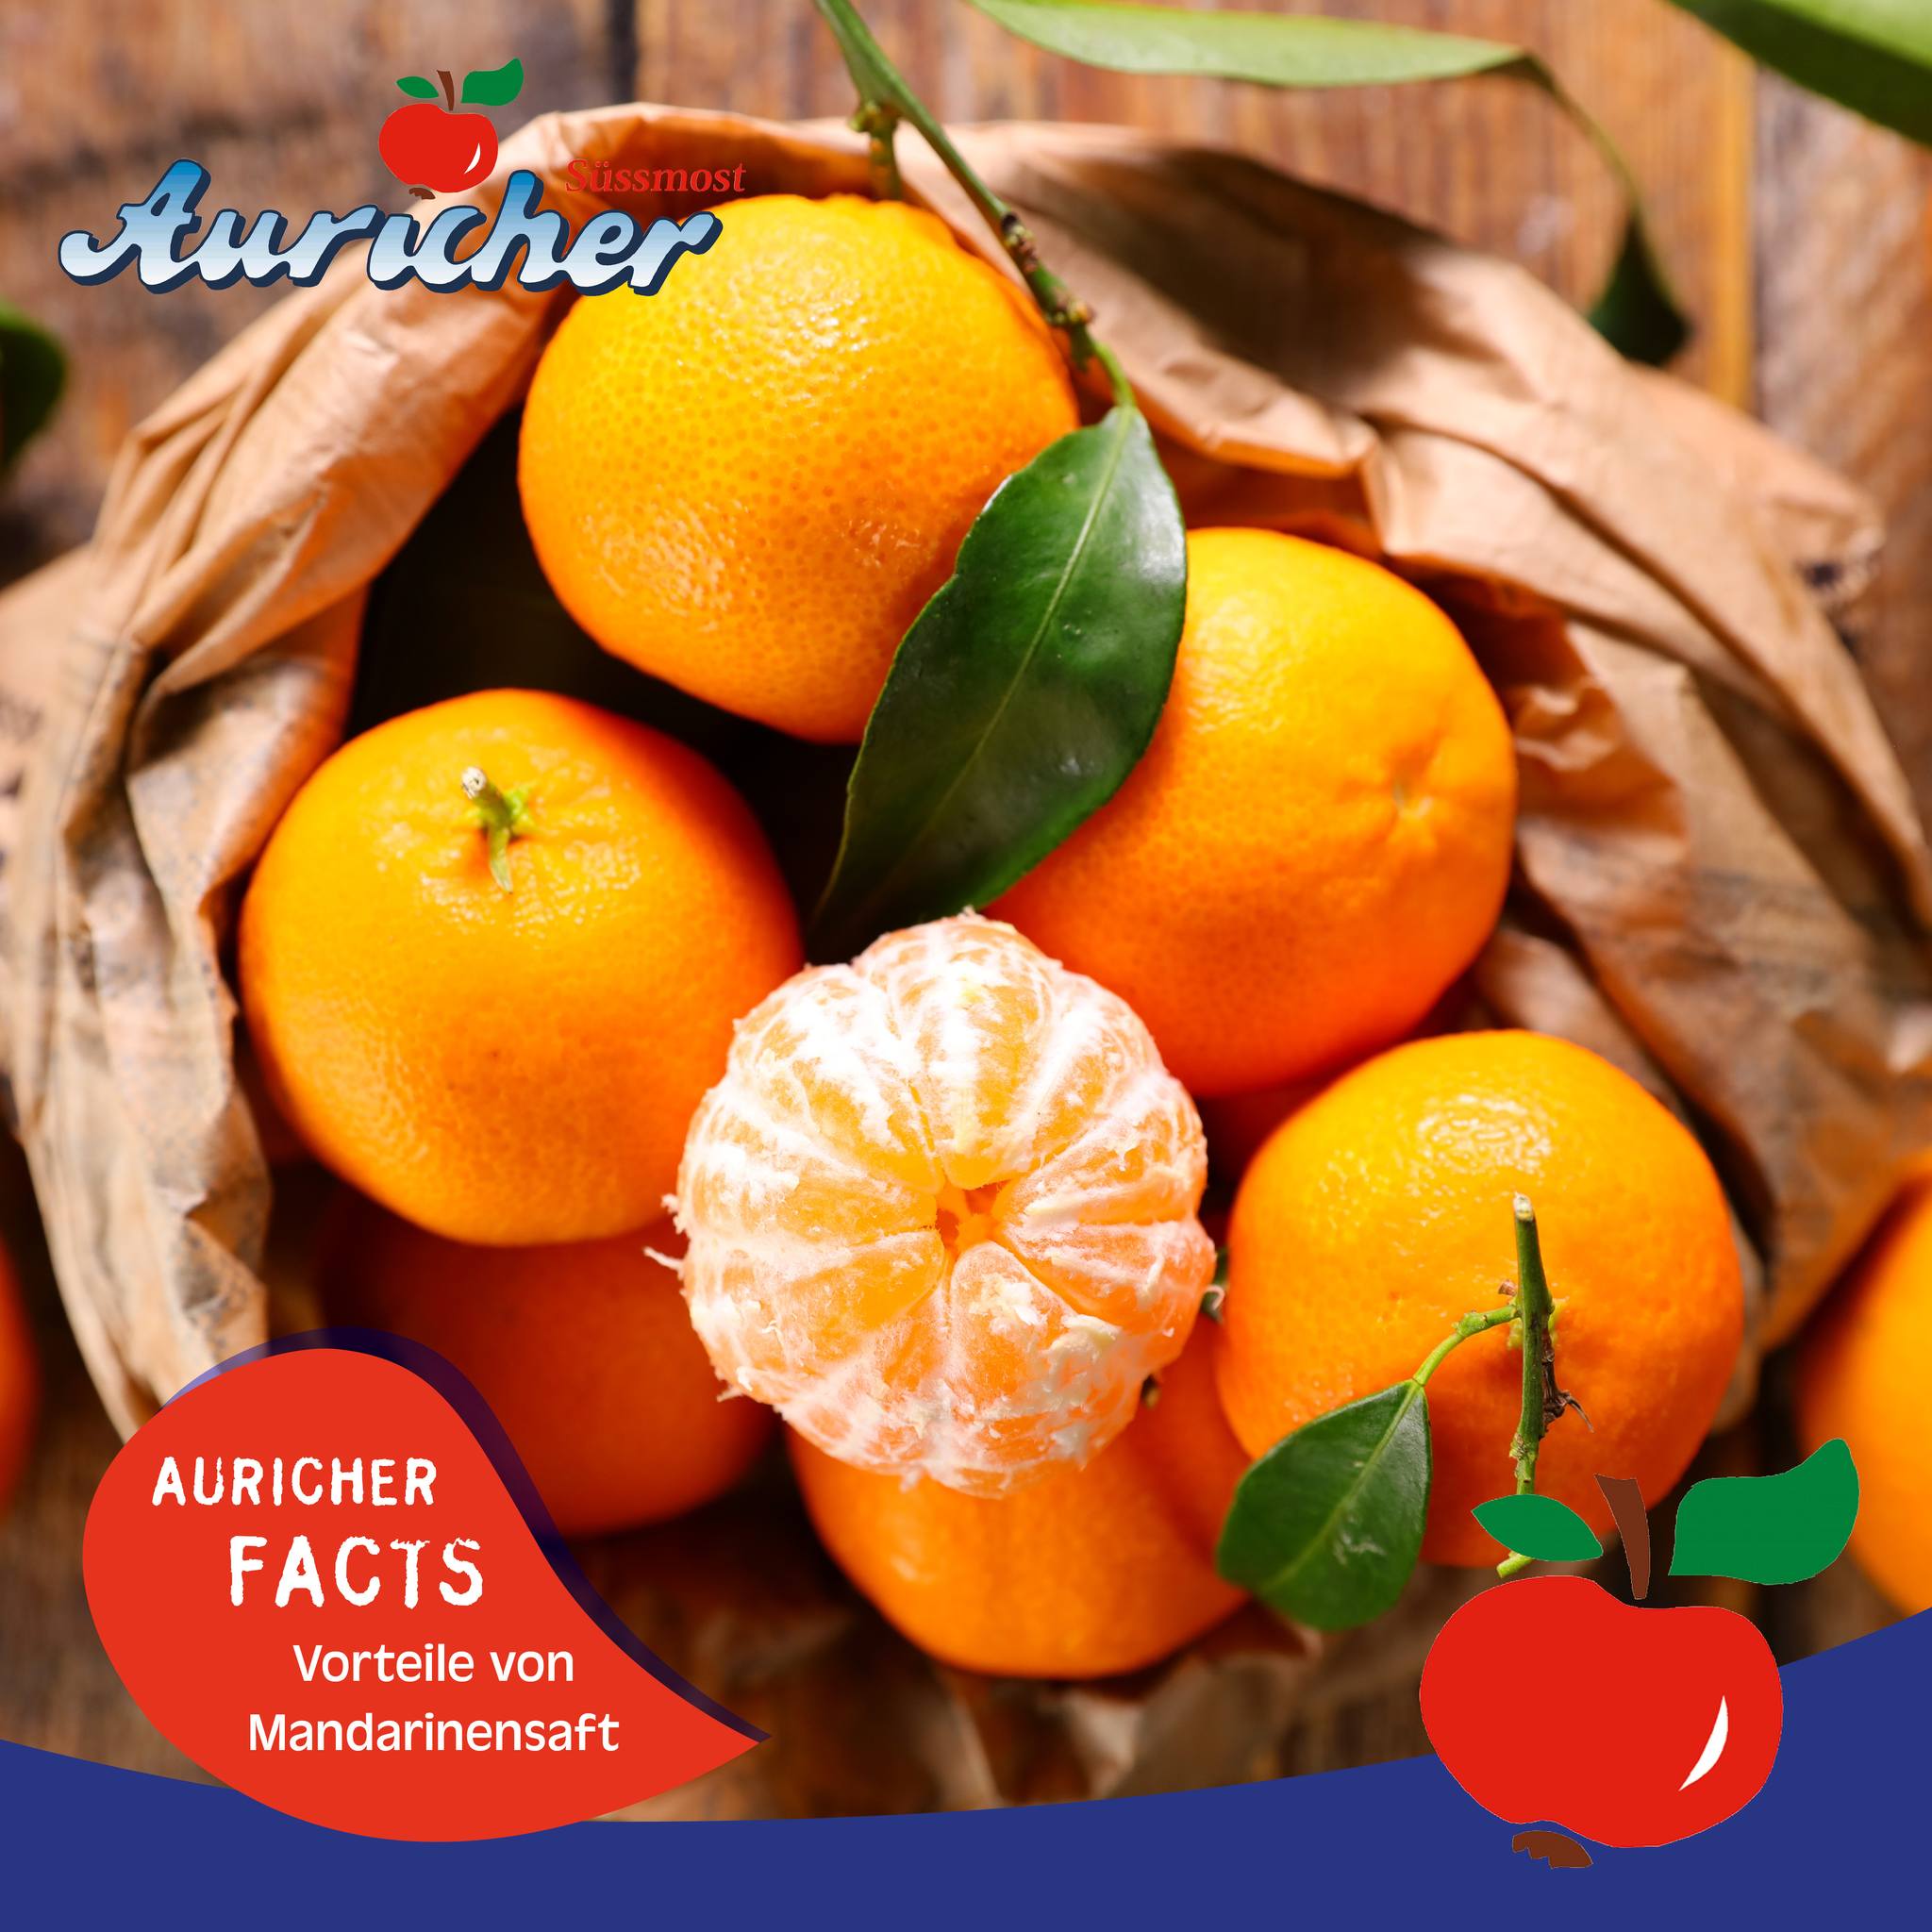 Wisst ihr schon, warum Mandarinensaft so gesund ist? 🤔